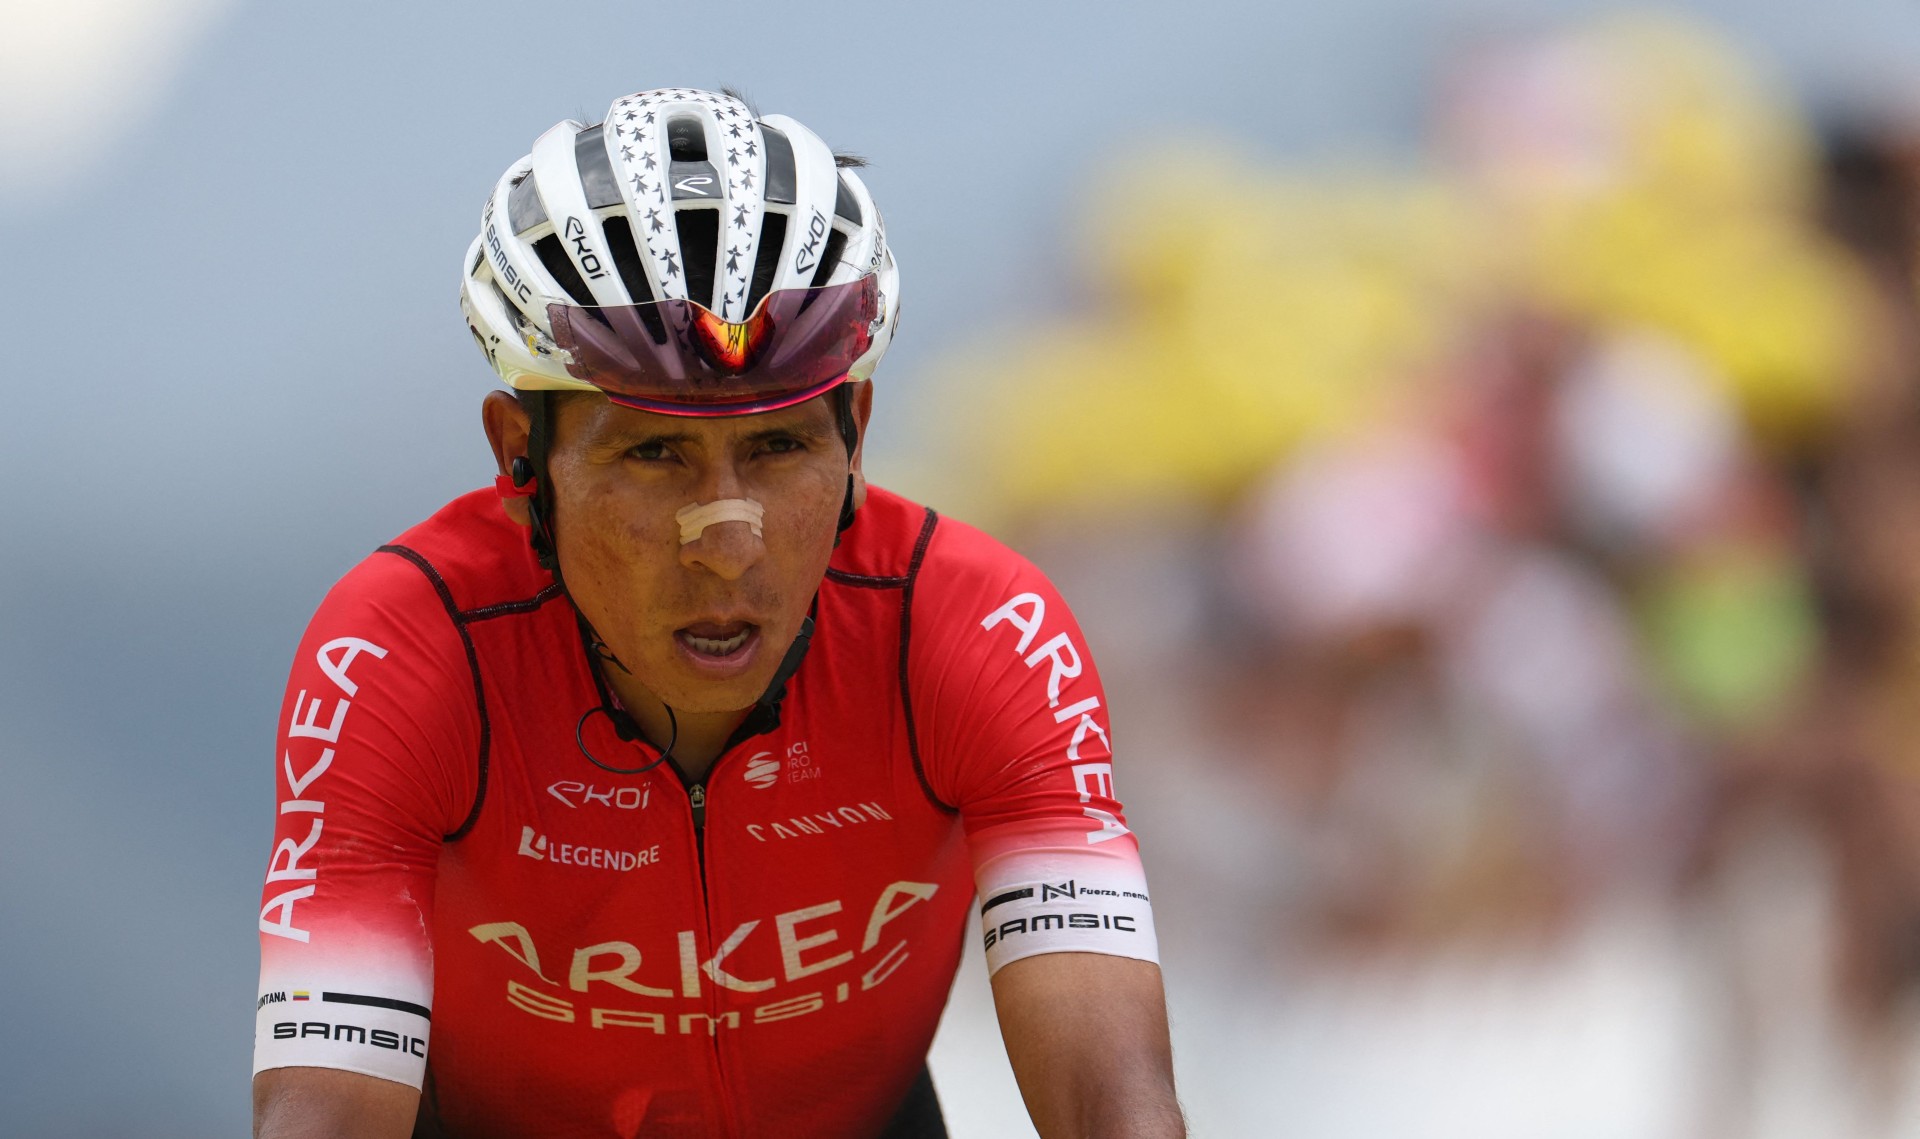 ¿Cómo le fue a Nairo Quintana hoy en el Tour de Francia